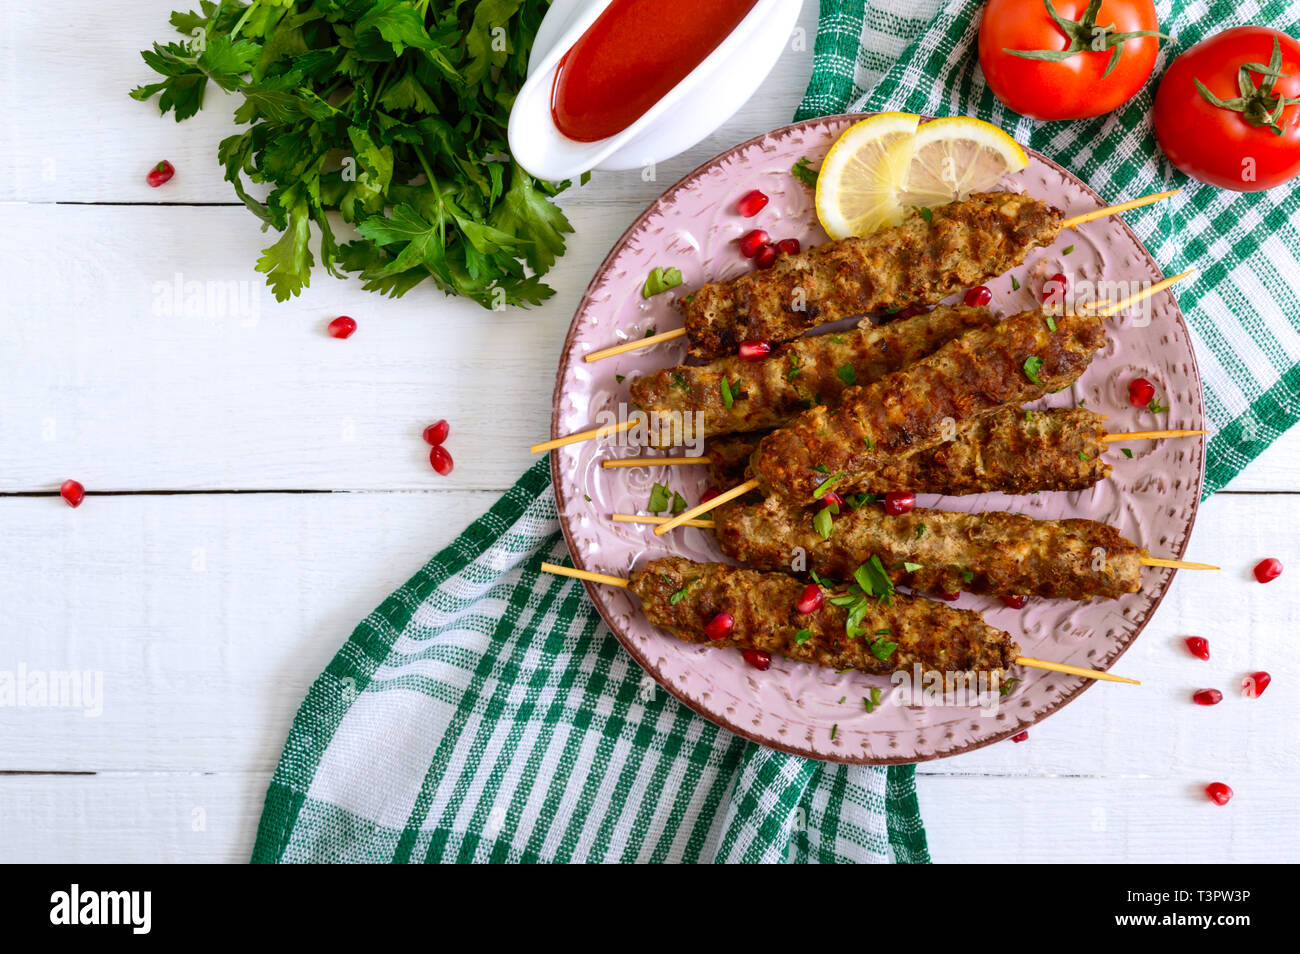 Lecker lula Kebab auf der Platte auf einem weißen Holztisch. Gehacktes Fleisch auf Holzspieße, gegrillt. Östliche Küche. Ansicht von oben, flach. Stockfoto